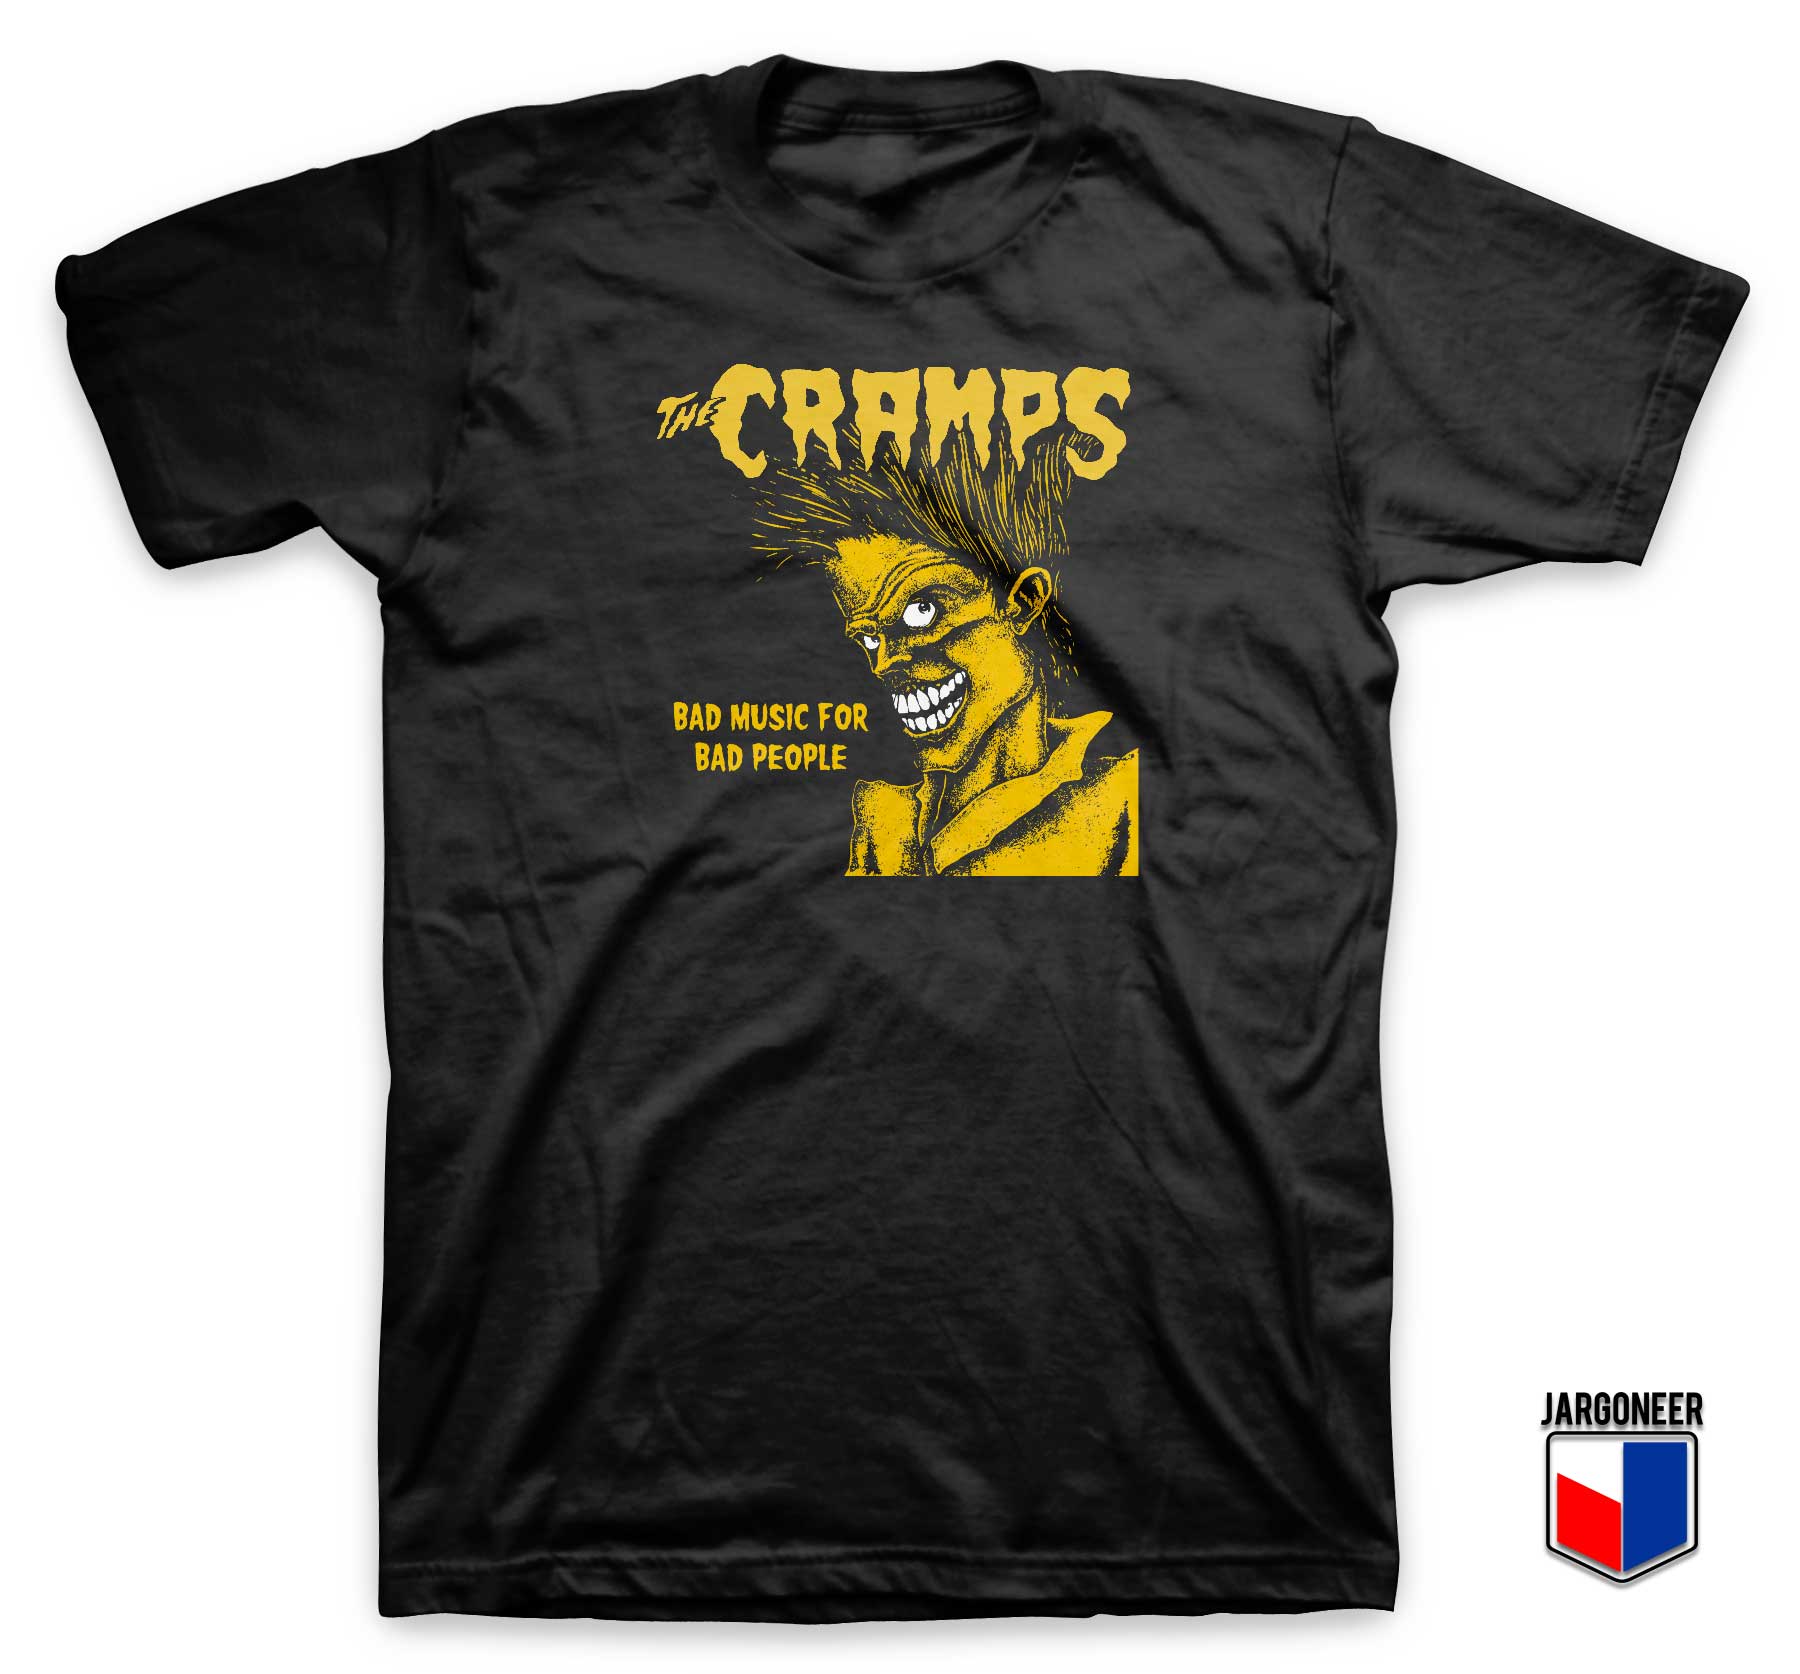 The Cramps Bad Music T Shirt - Shop Unique Graphic Cool Shirt Designs